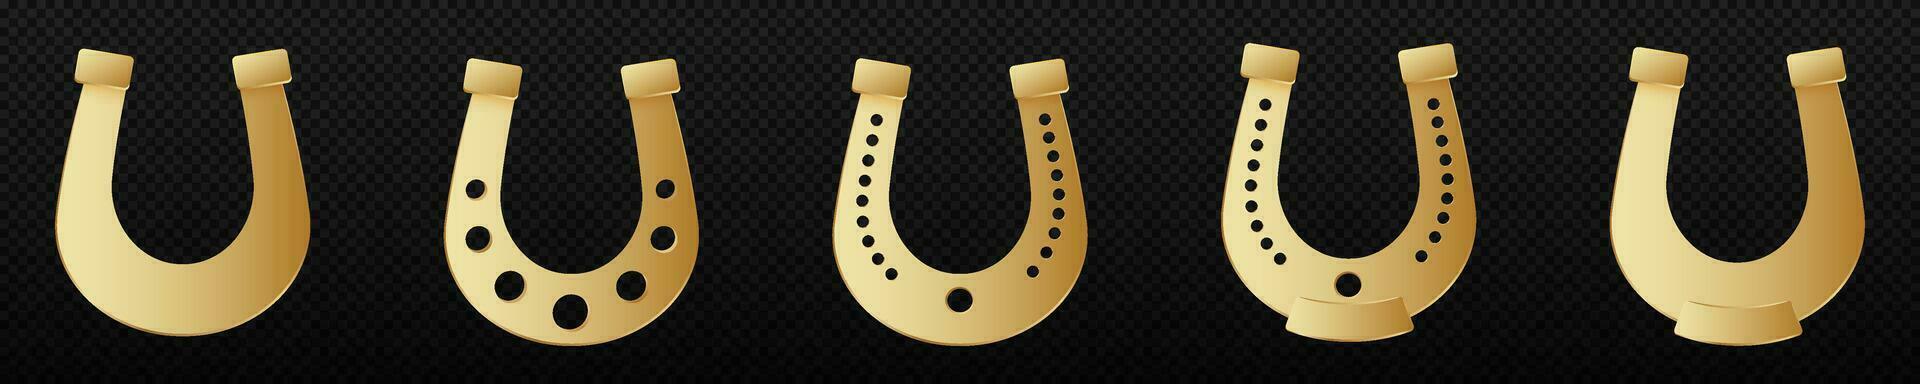 dourado ferradura. curvado símbolo do Boa sorte com gravado decorativo buracos interior decoração elemento e atributo para cascos do gado vetor. vetor